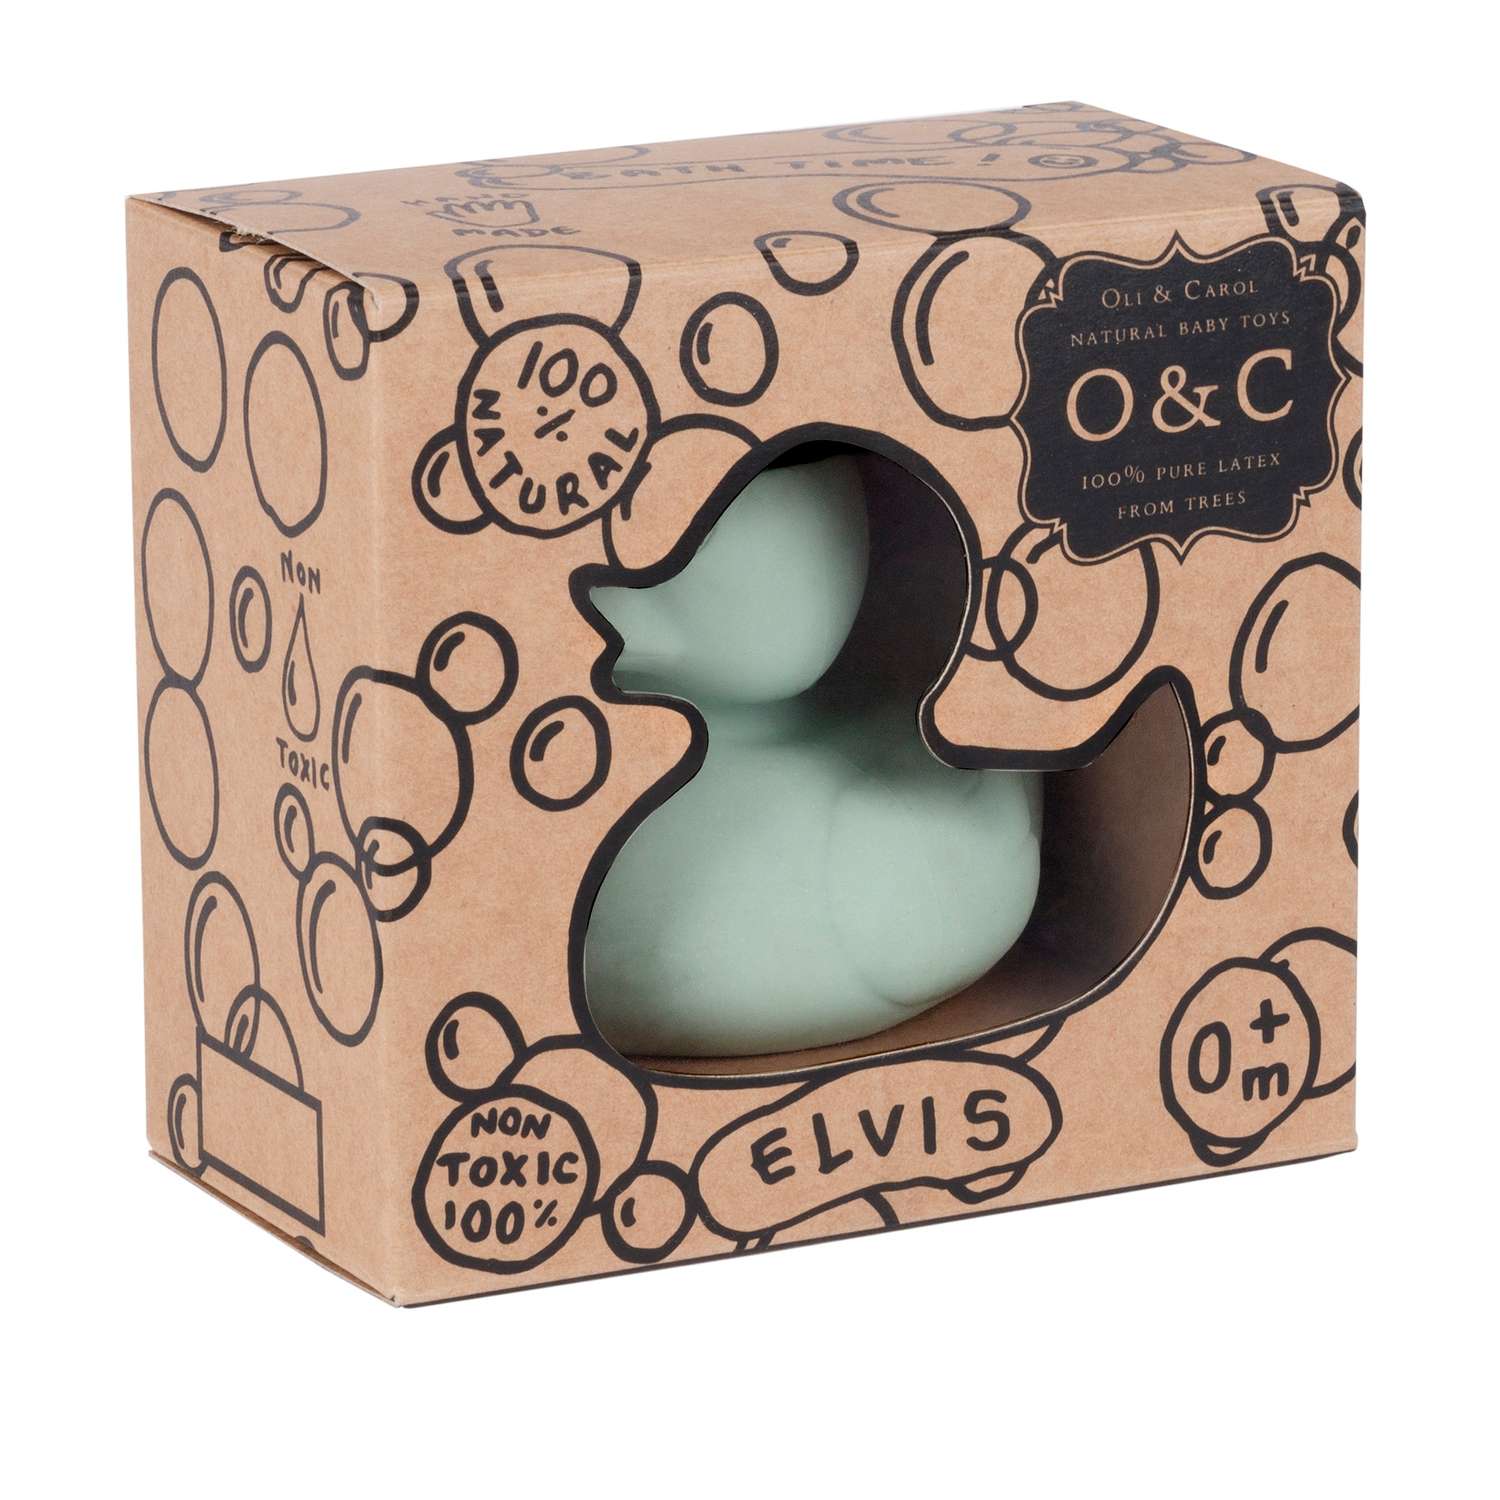 Прорезыватель грызунок OLI and CAROL Elvis The Duck Mint из натурального каучука - фото 2